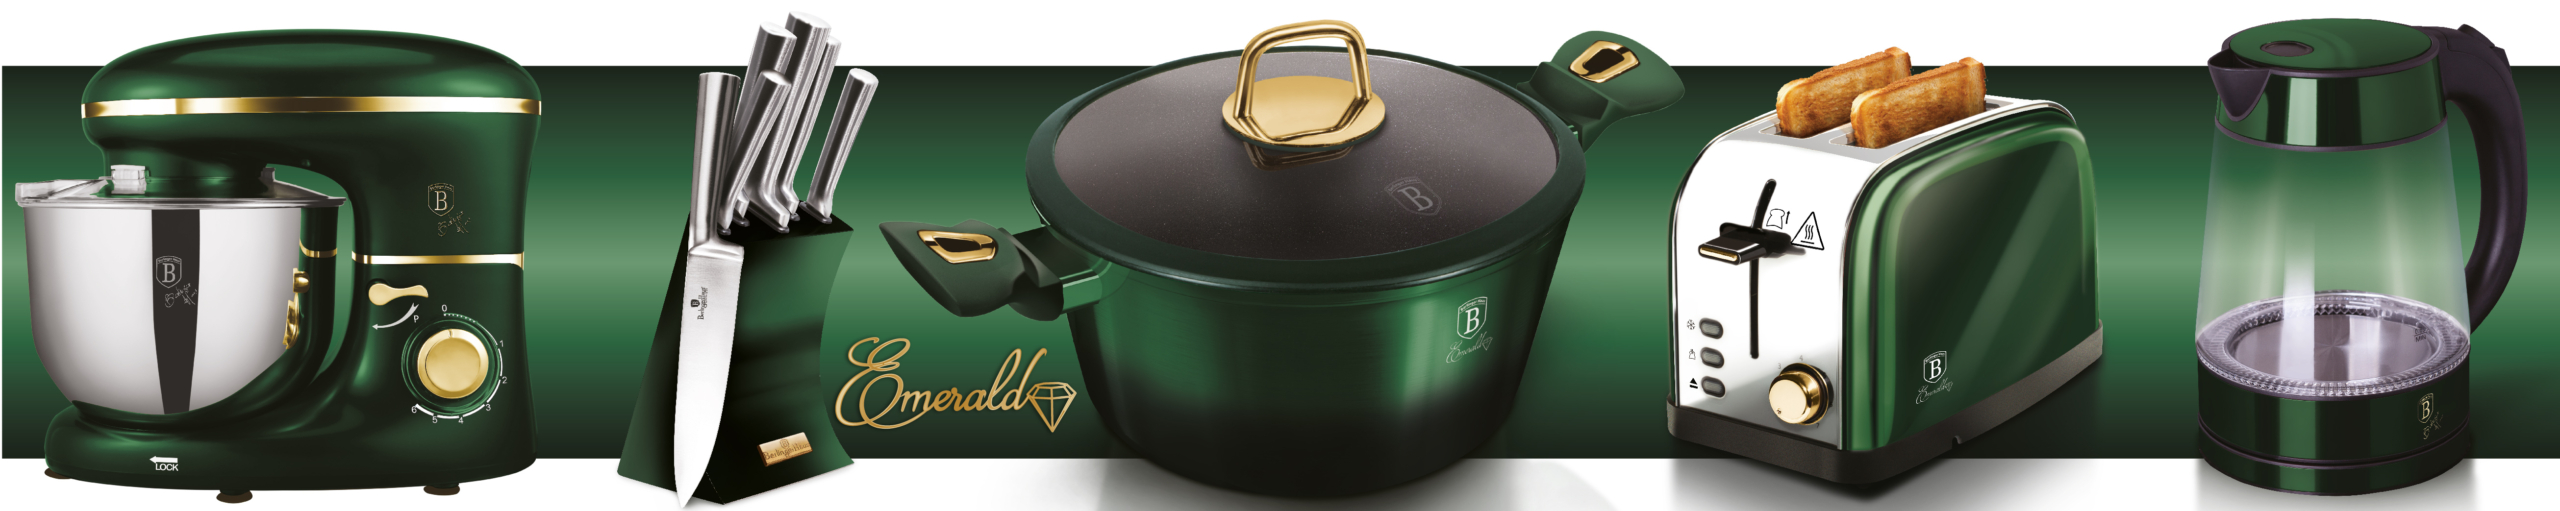 BerlingerHaus Emerald Collection termék család oldal a főbb konyhai termékekkel